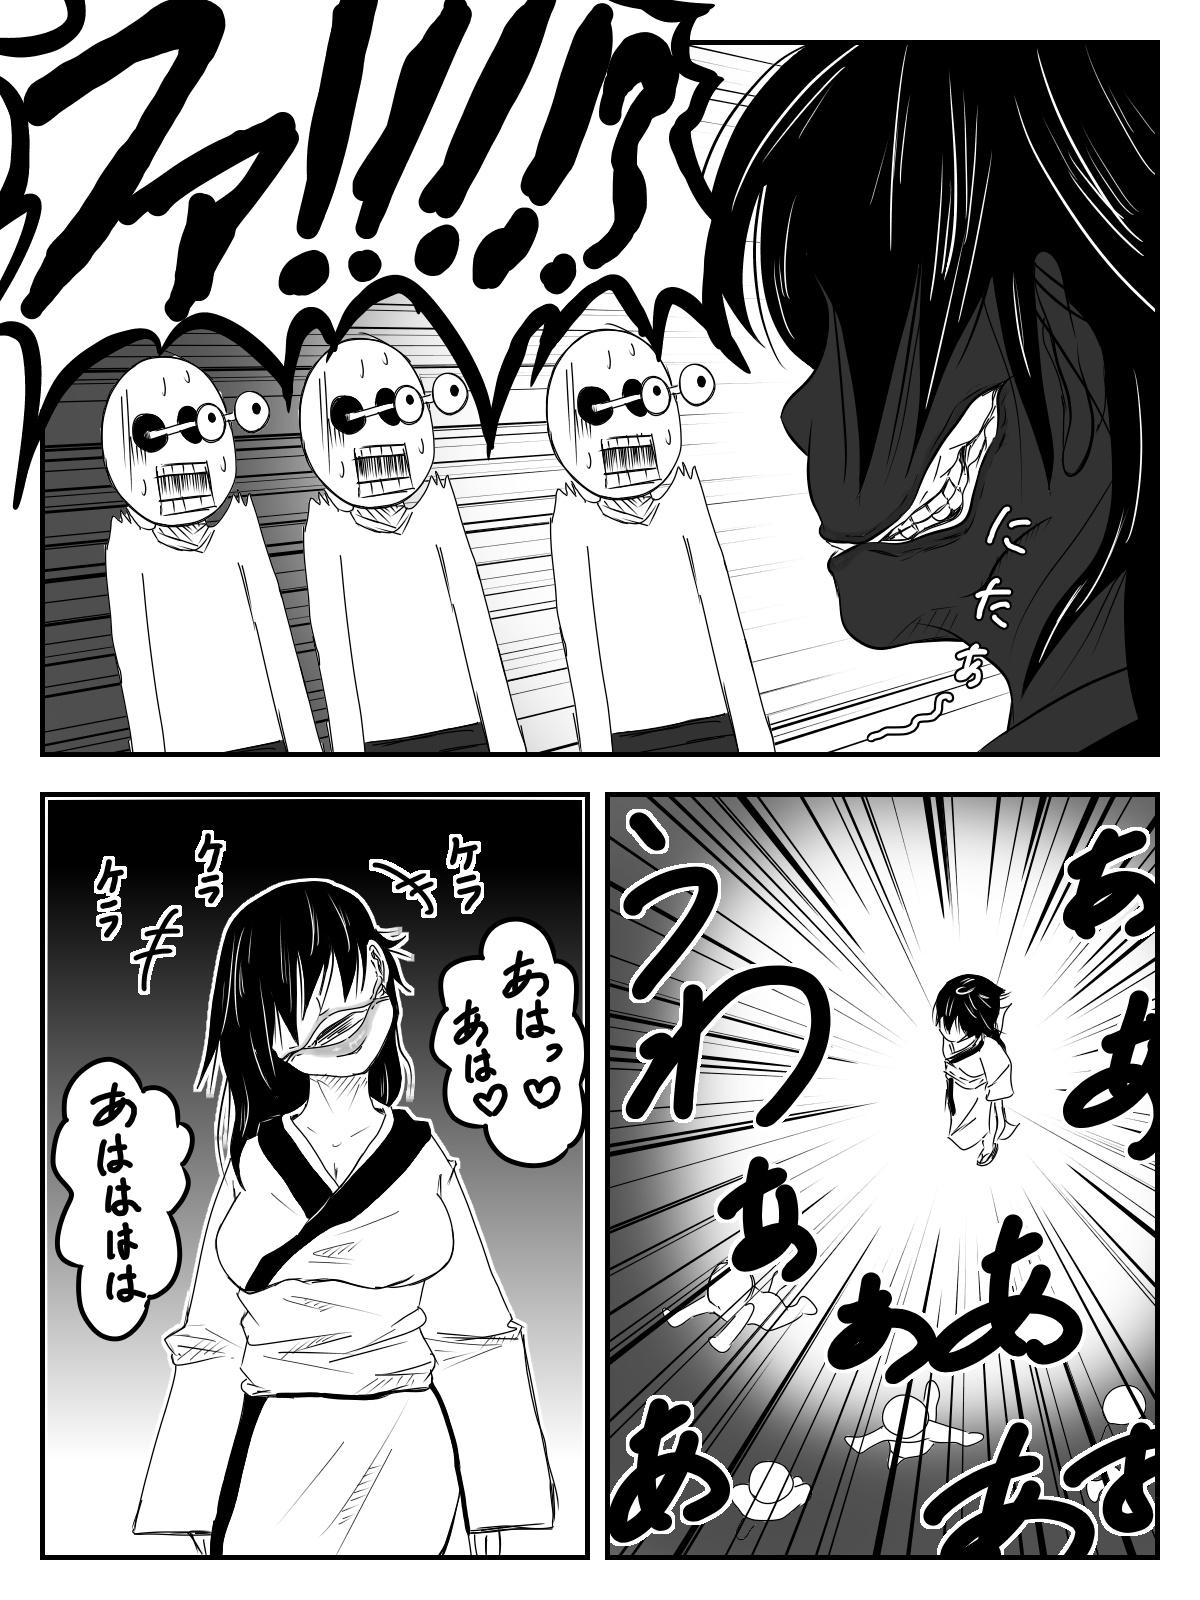 No Condom Kuchisake Onna ga Watashi Kirei? tte Kiite Kita kara Okashimashita - Original Verification - Page 8